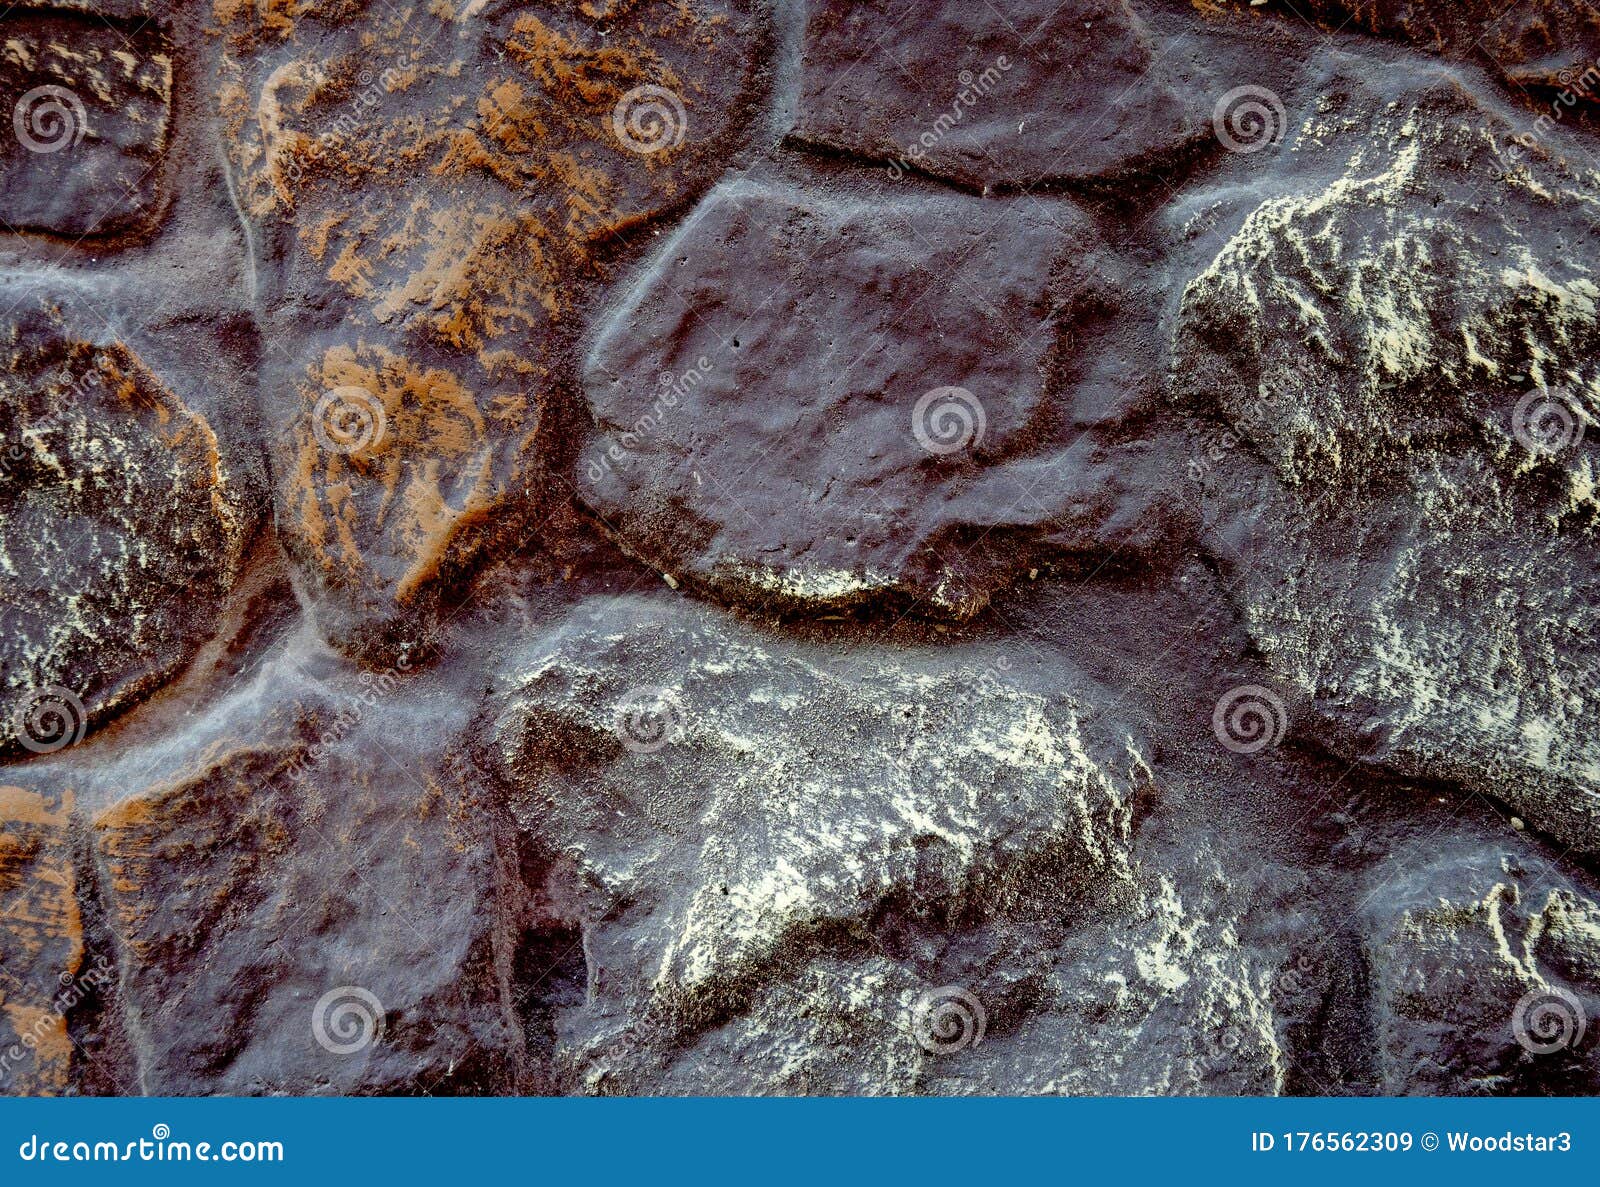 天然石的苦涩古纹库存图片 图片包括有天然石的苦涩古纹